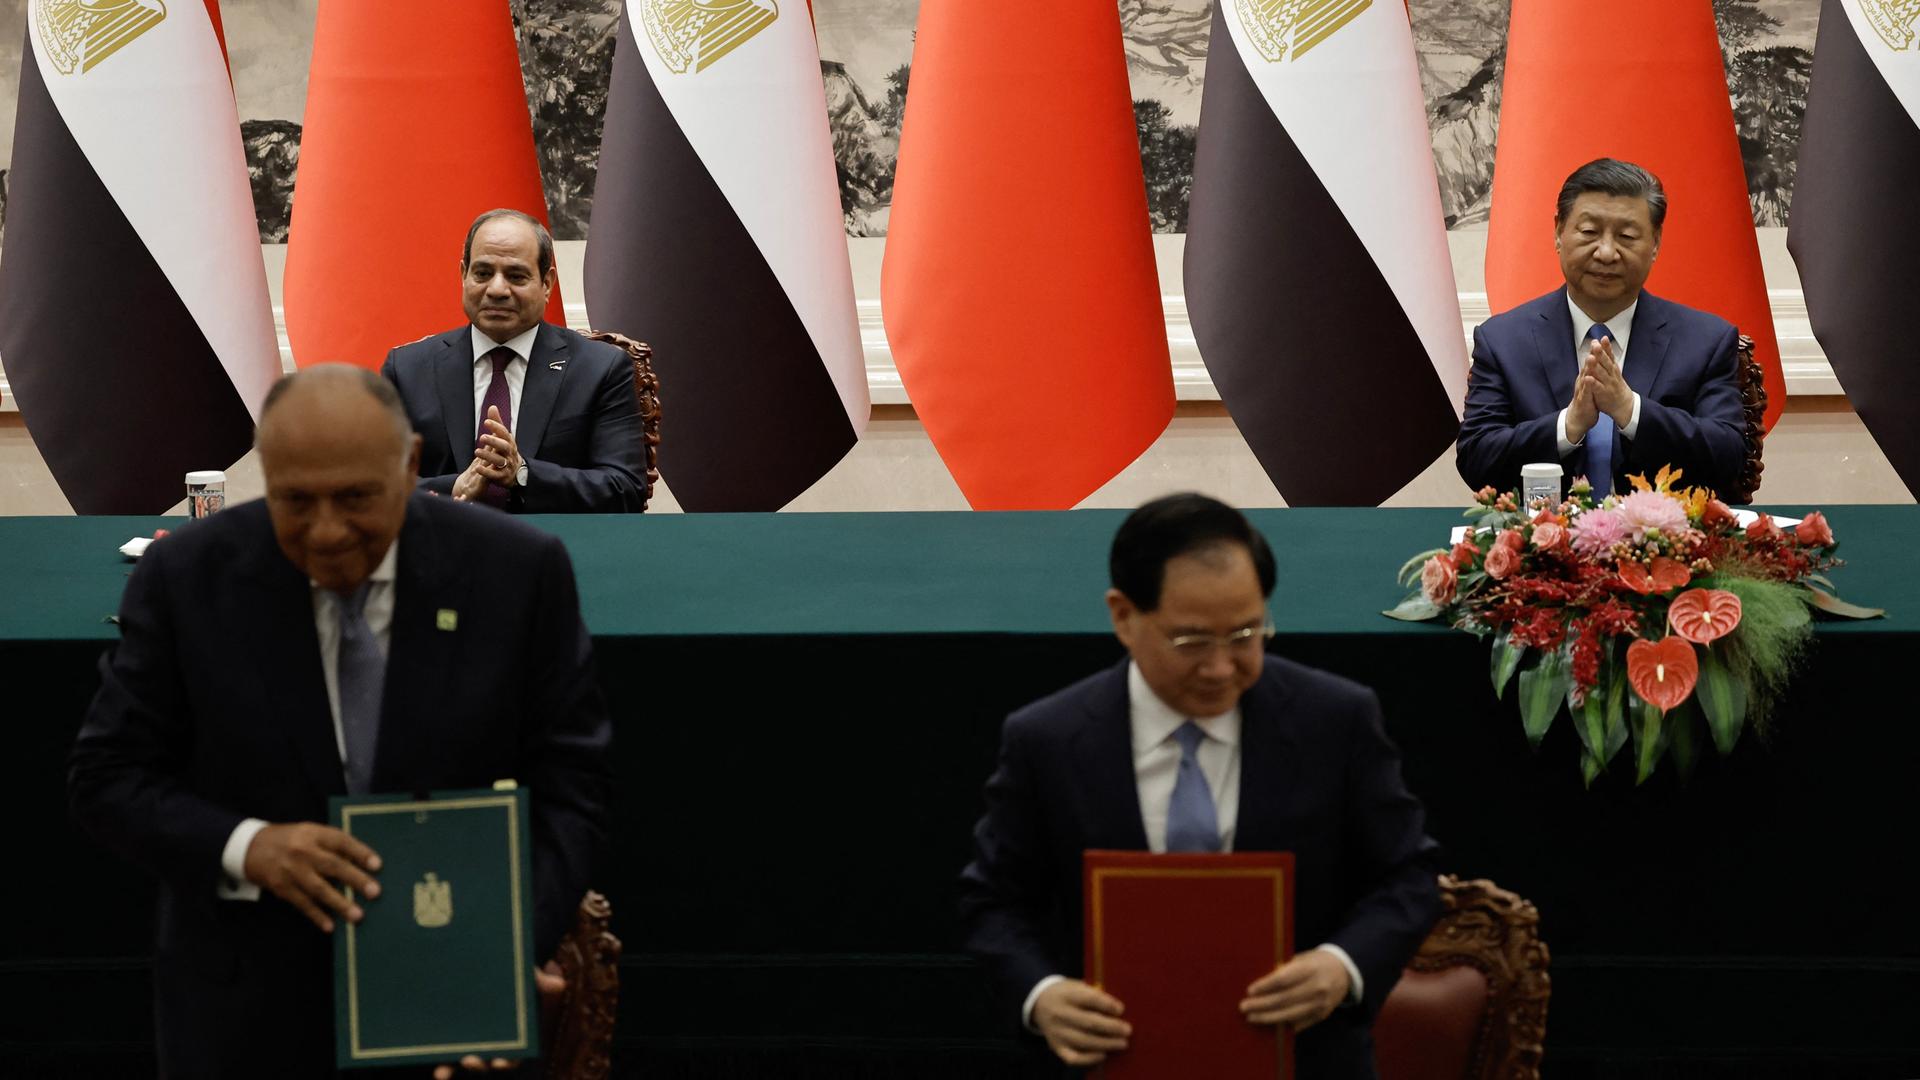 Chinas Präsident Xi Jinping und sein ägyptischer Amtskollege al-Sisi unterzeichnen in Peking ein bilaterales Abkommen zur wirtschaftlichen Zusammenarbeit. Im Vordergrund zeigen zwei Männer die Dokumente vor.